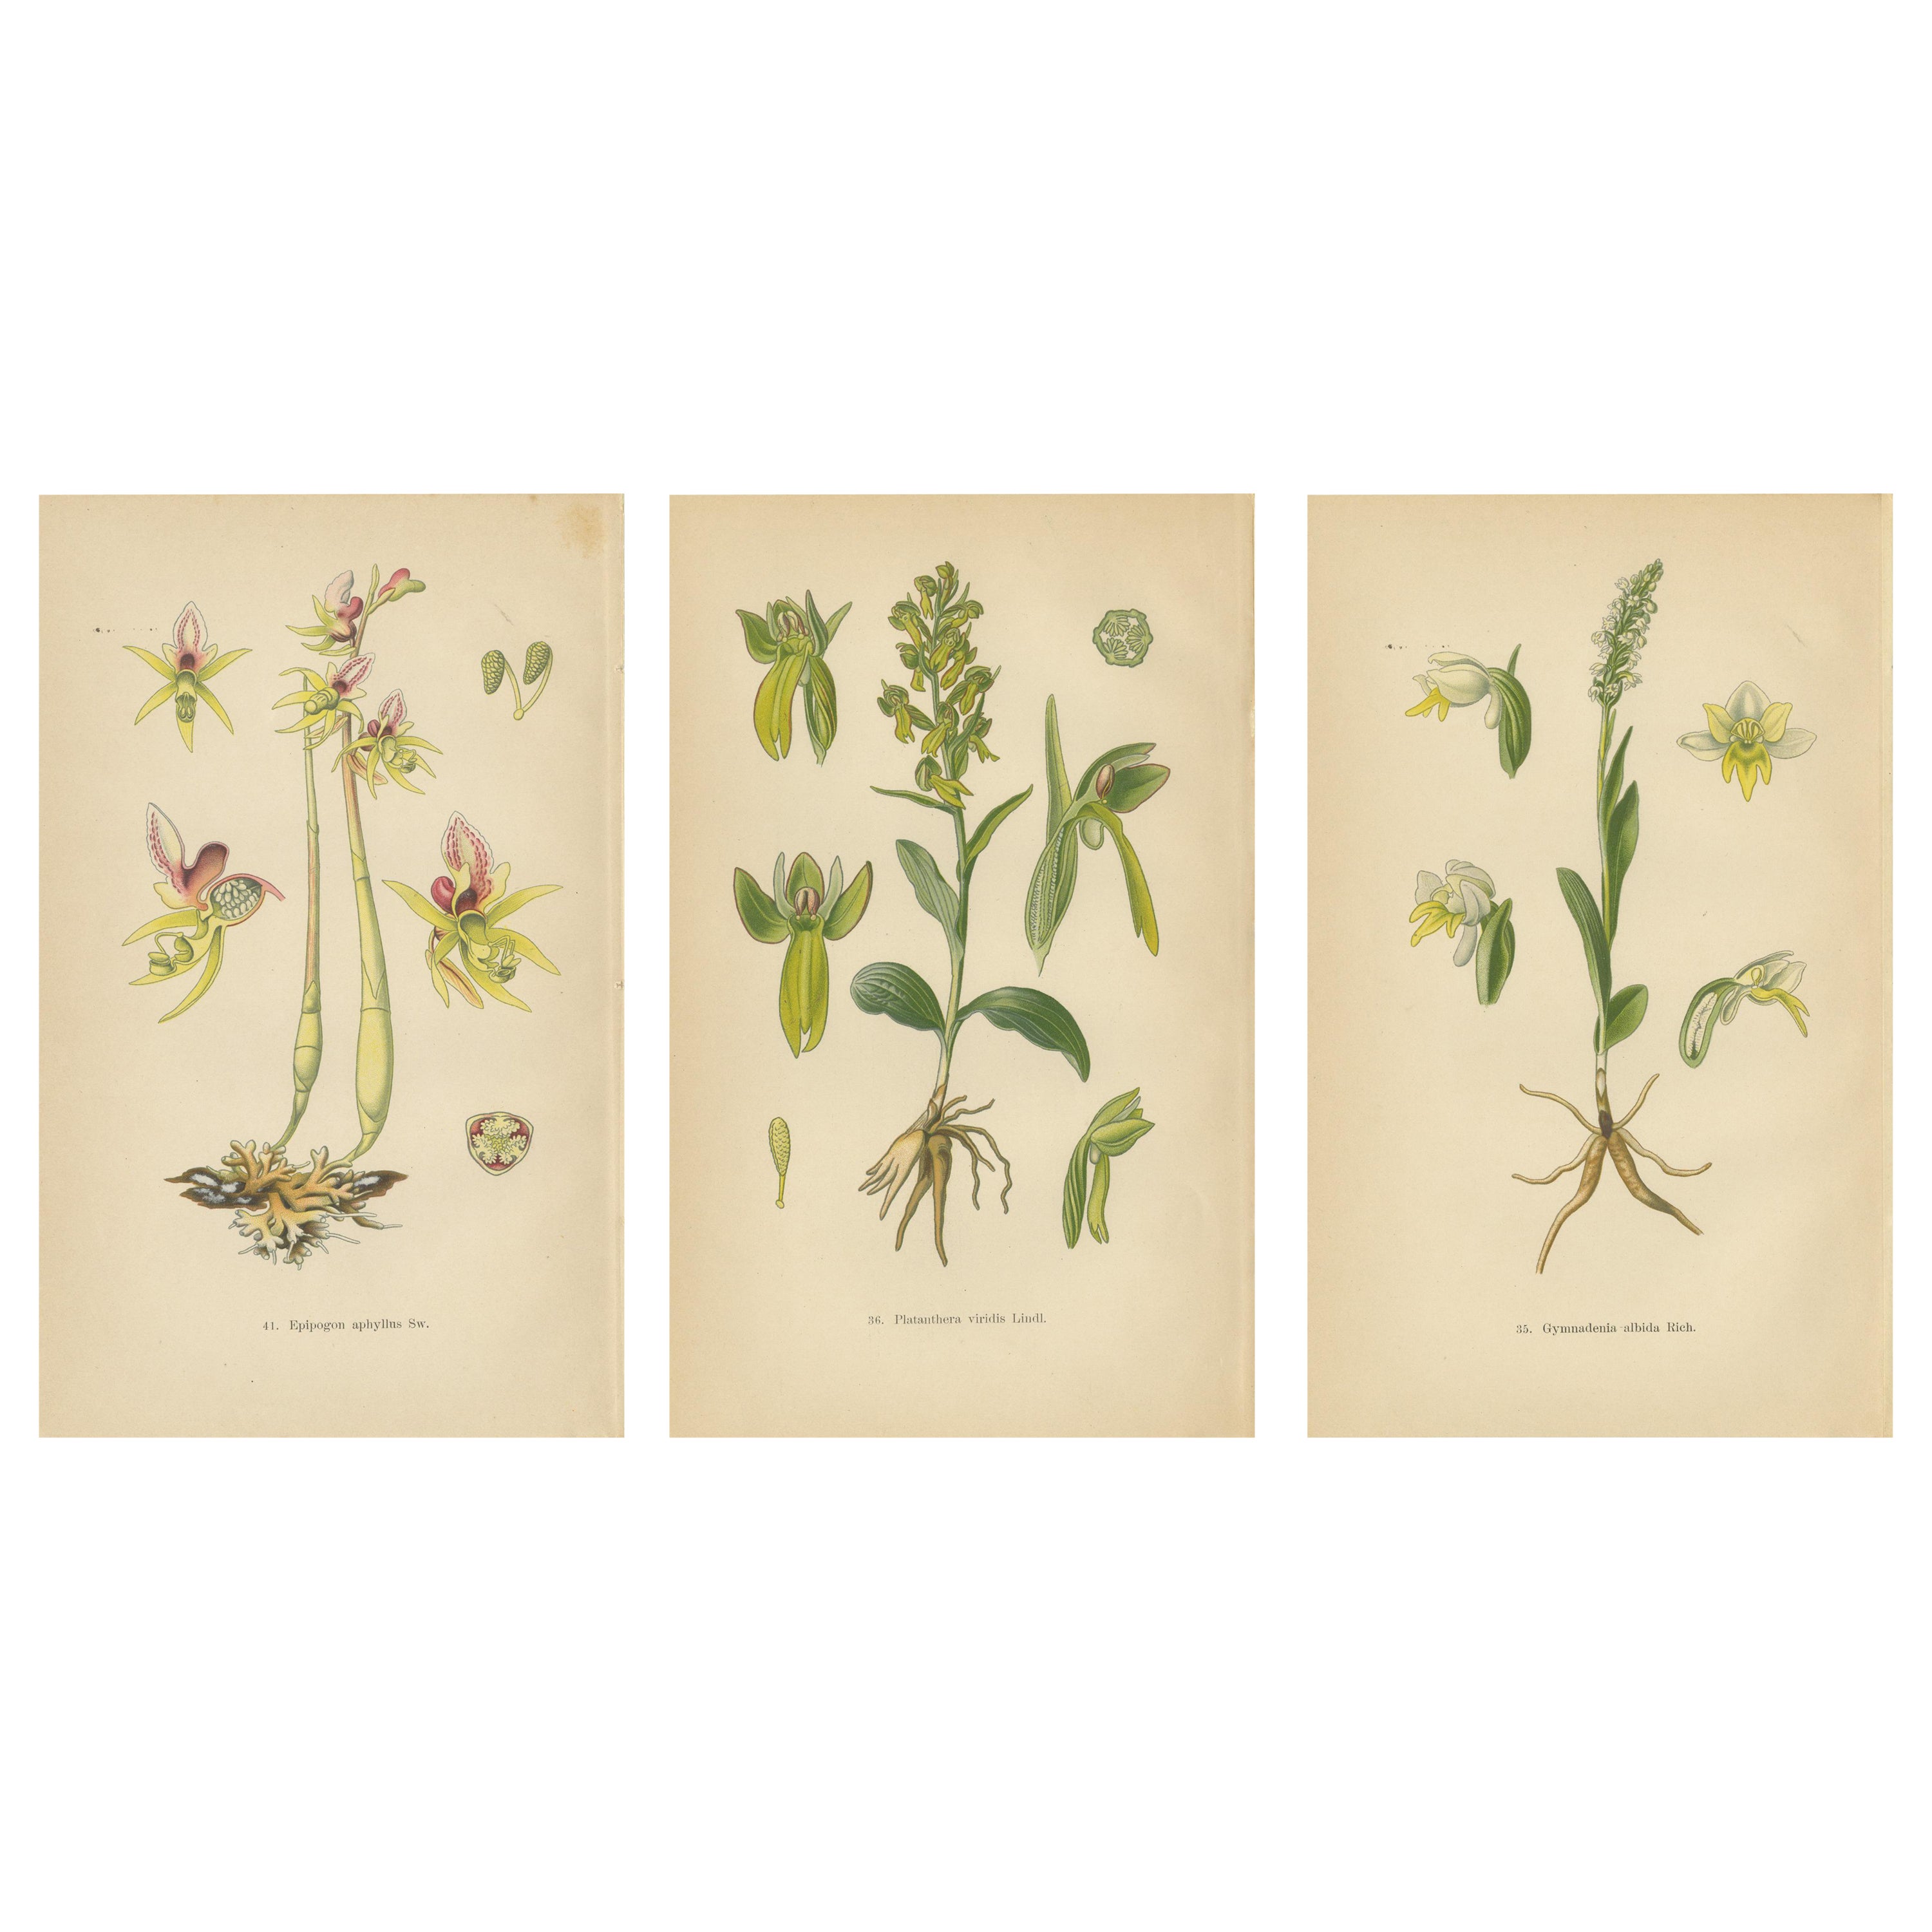 Symphonie florale : Les illustrations botaniques de Müller de 1904